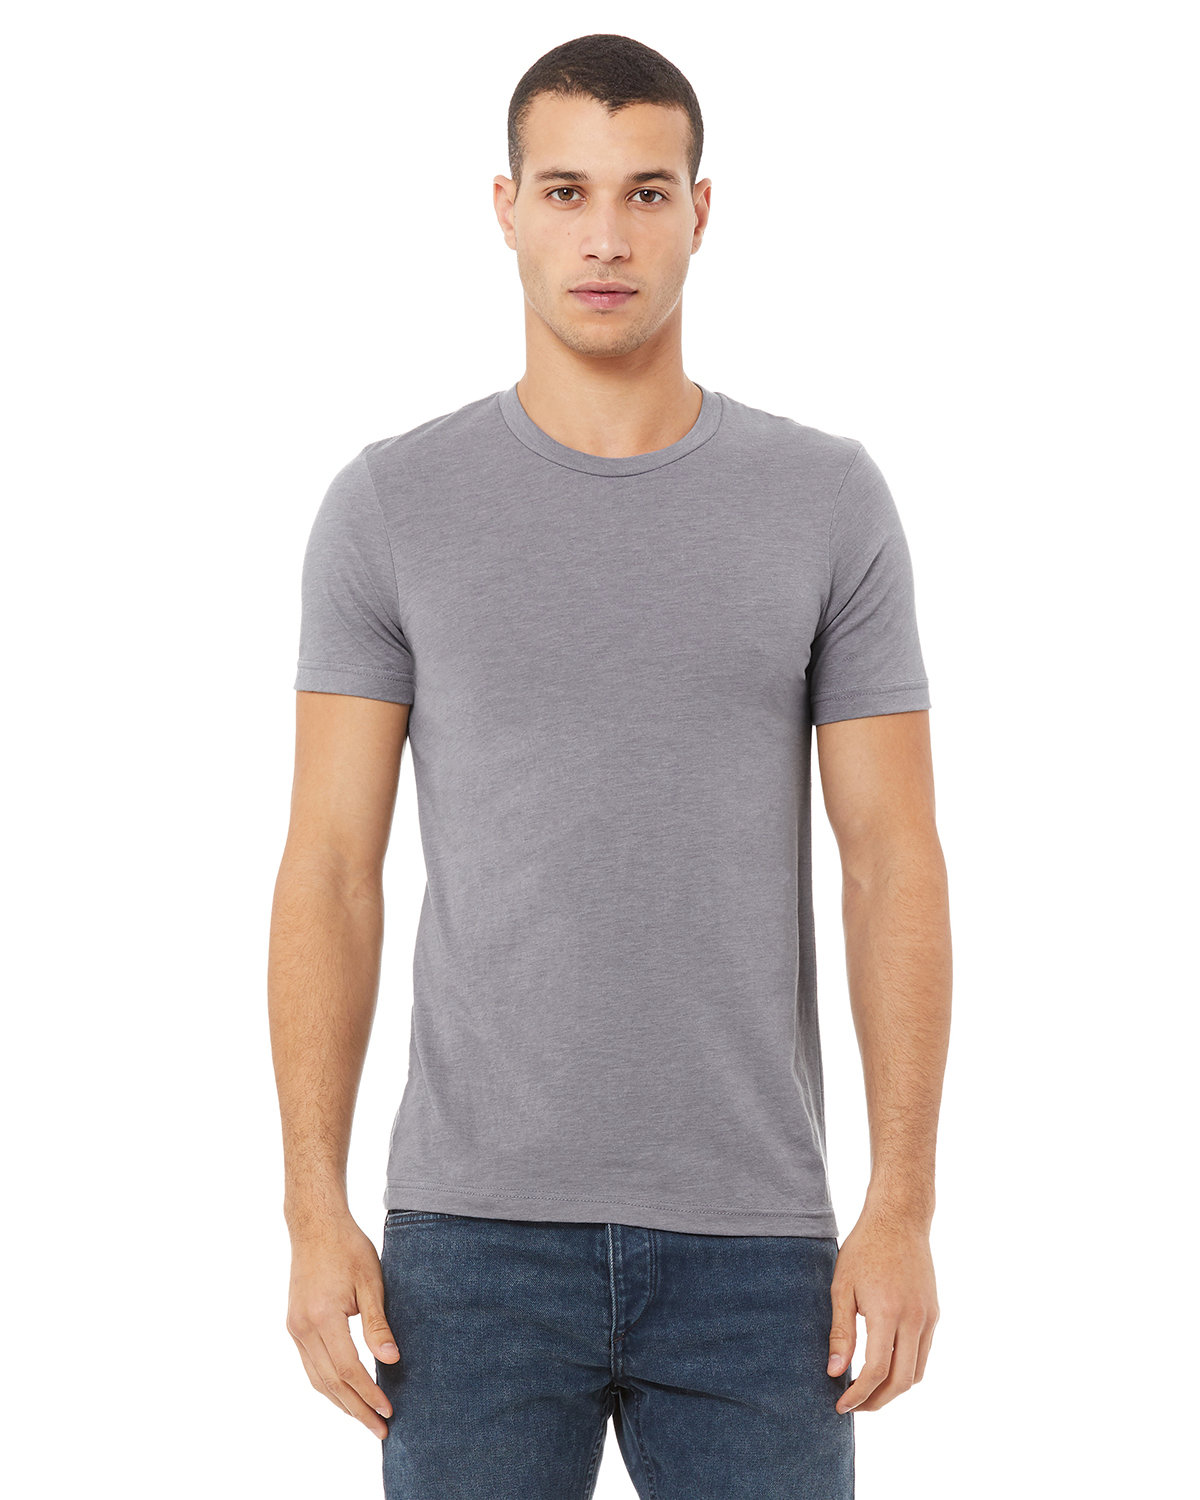 Hanes Originals Men's Tri-Blend T-Shirt